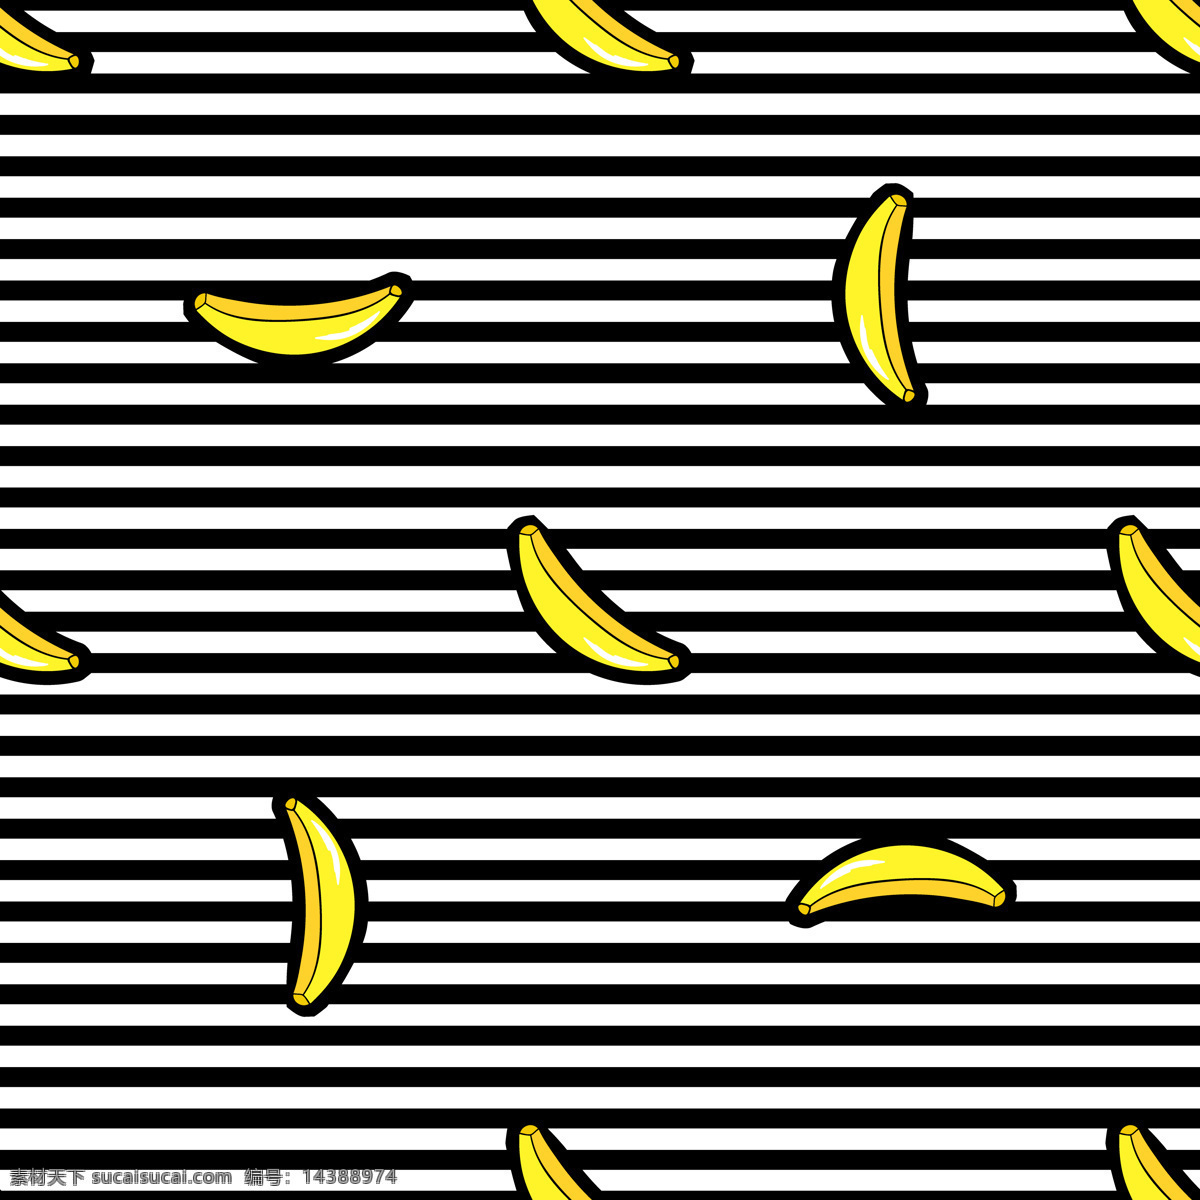 时尚潮流 印花 图案 创意 热带风格 嘴唇 日韩 香蕉 涂鸦 背景设计 矢量图案 喜欢 衣服印花 水果 可爱 卡通 嘻哈 动漫动画